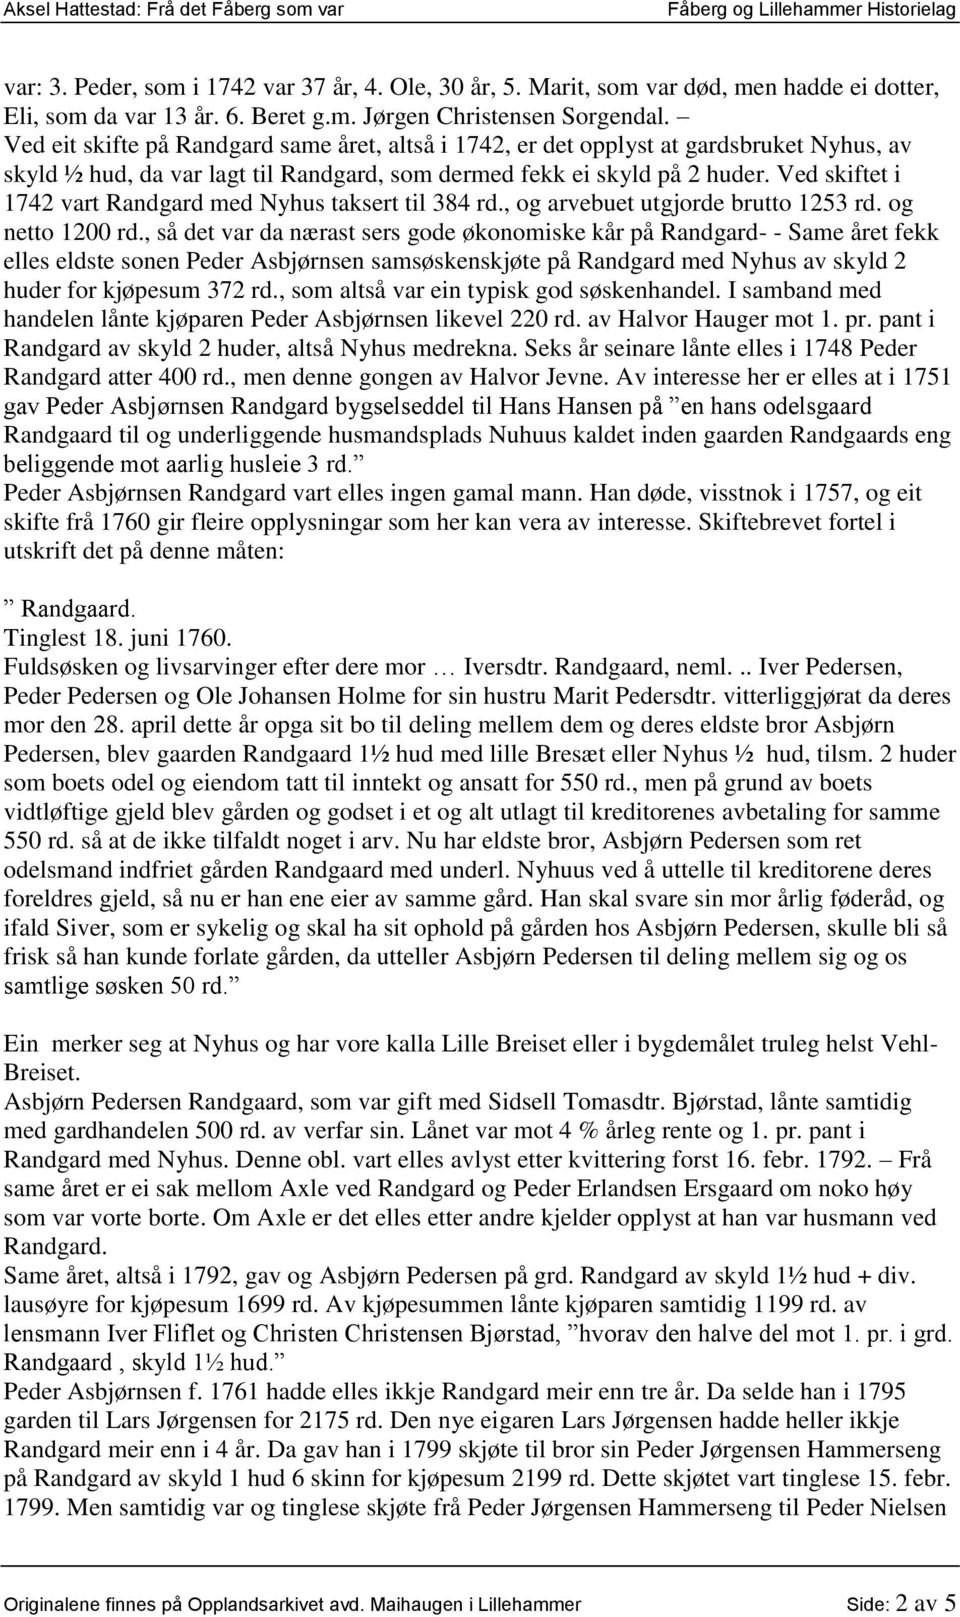 Ved skiftet i 1742 vart Randgard med Nyhus taksert til 384 rd., og arvebuet utgjorde brutto 1253 rd. og netto 1200 rd.